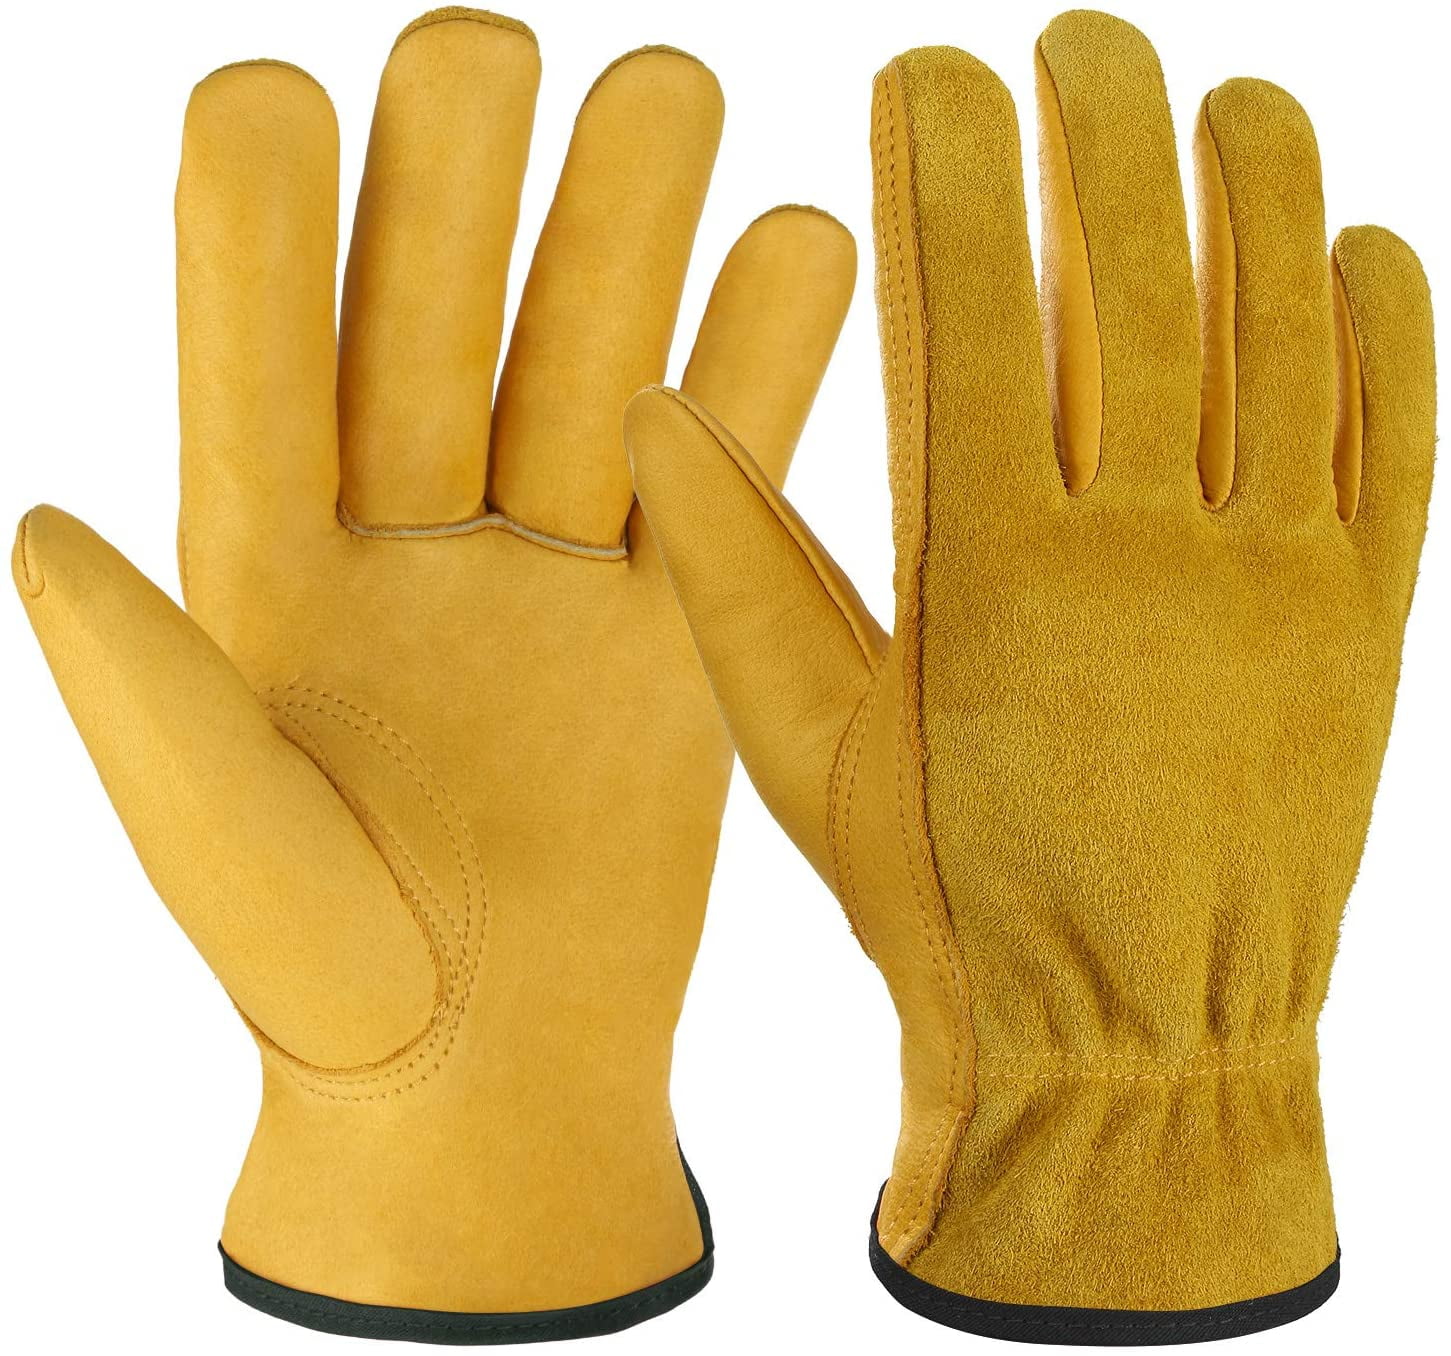 Ladies Gardening Leather Gloves Thorn Proof Garden Mechanic Builder work Gloves 